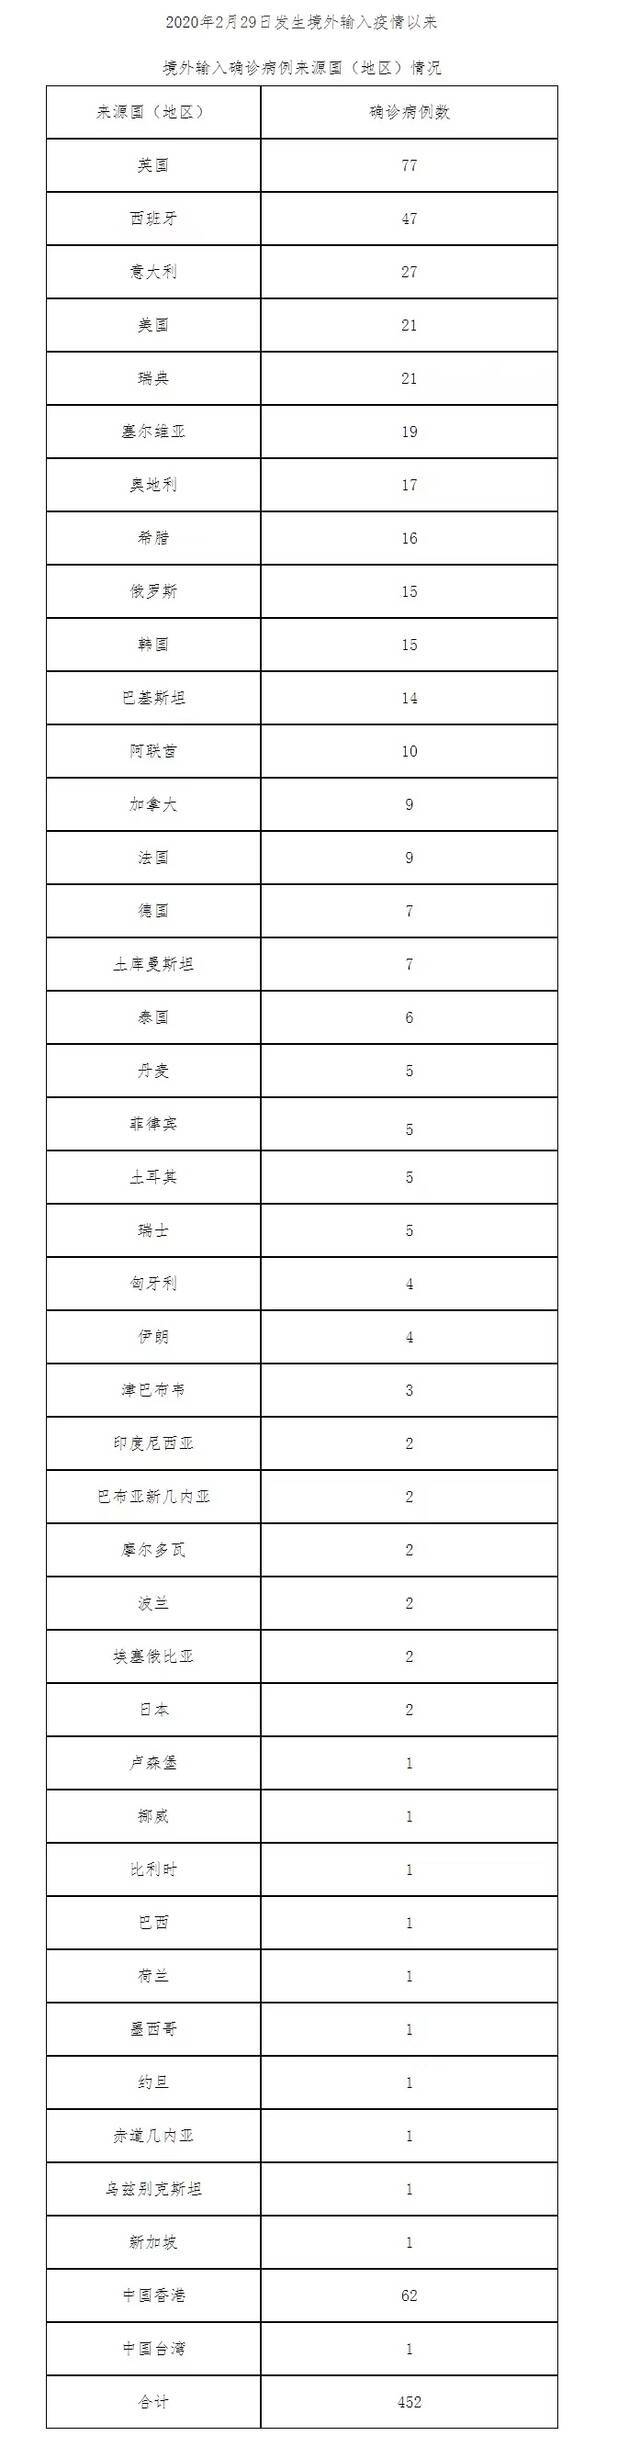 北京2月27日新增20例境外输入确诊病例和4例境外输入无症状感染者